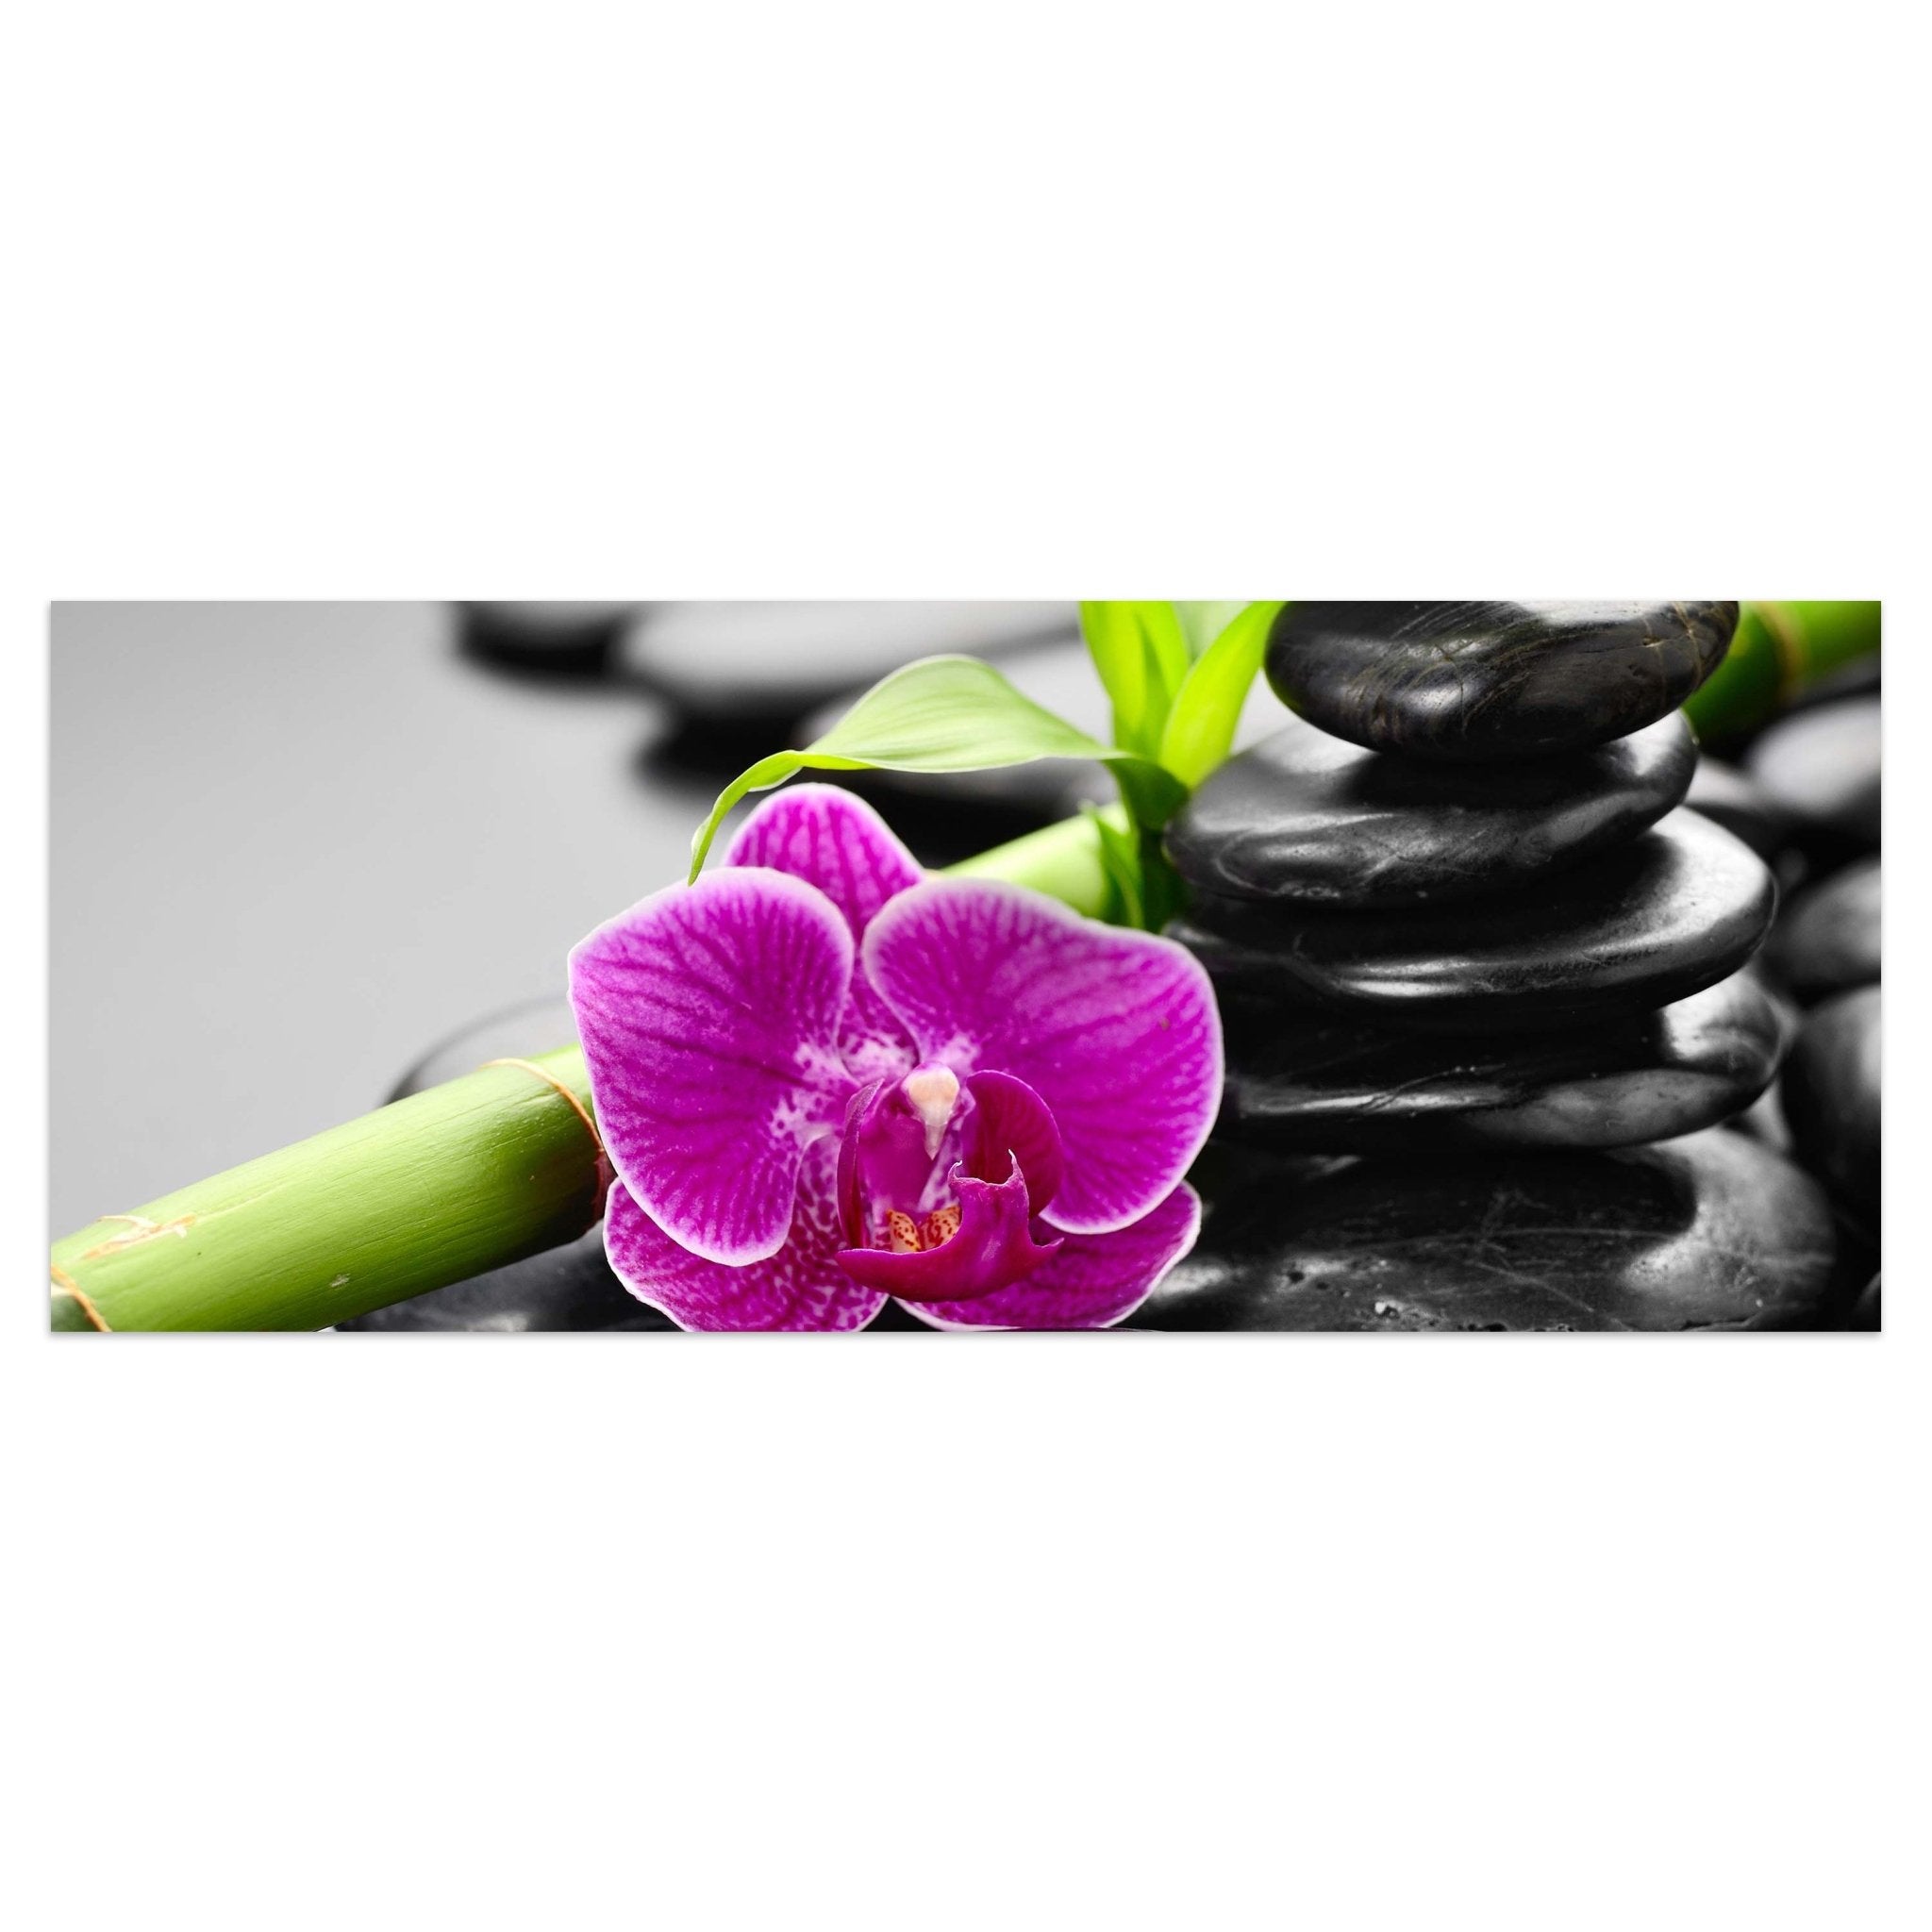 Leinwandbild Zen Basaltsteine und Orchidee M0954 kaufen - Bild 1